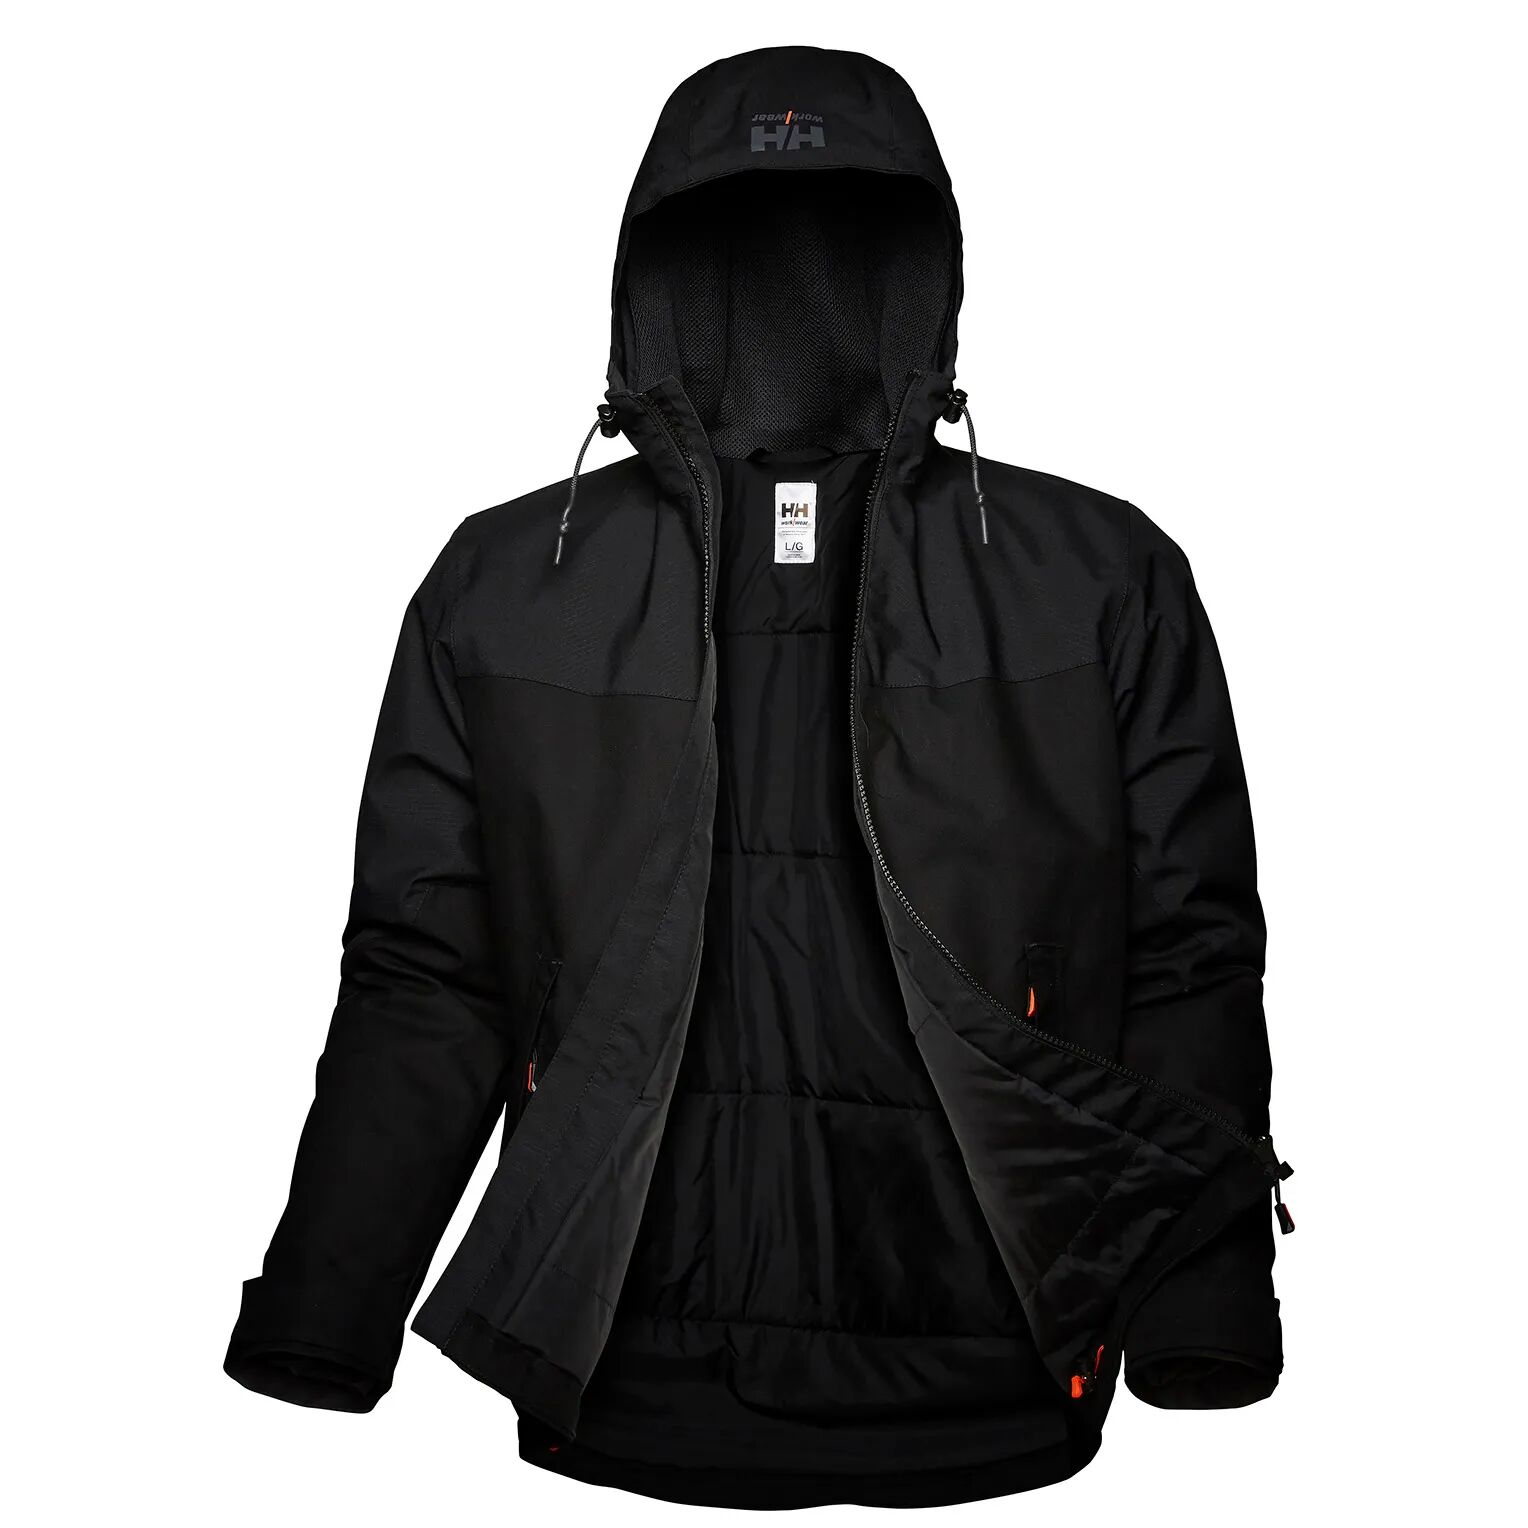 HH Workwear Helly Hansen WorkwearOxford Primaloft Insulated High Performance Winter Jacket Black XL